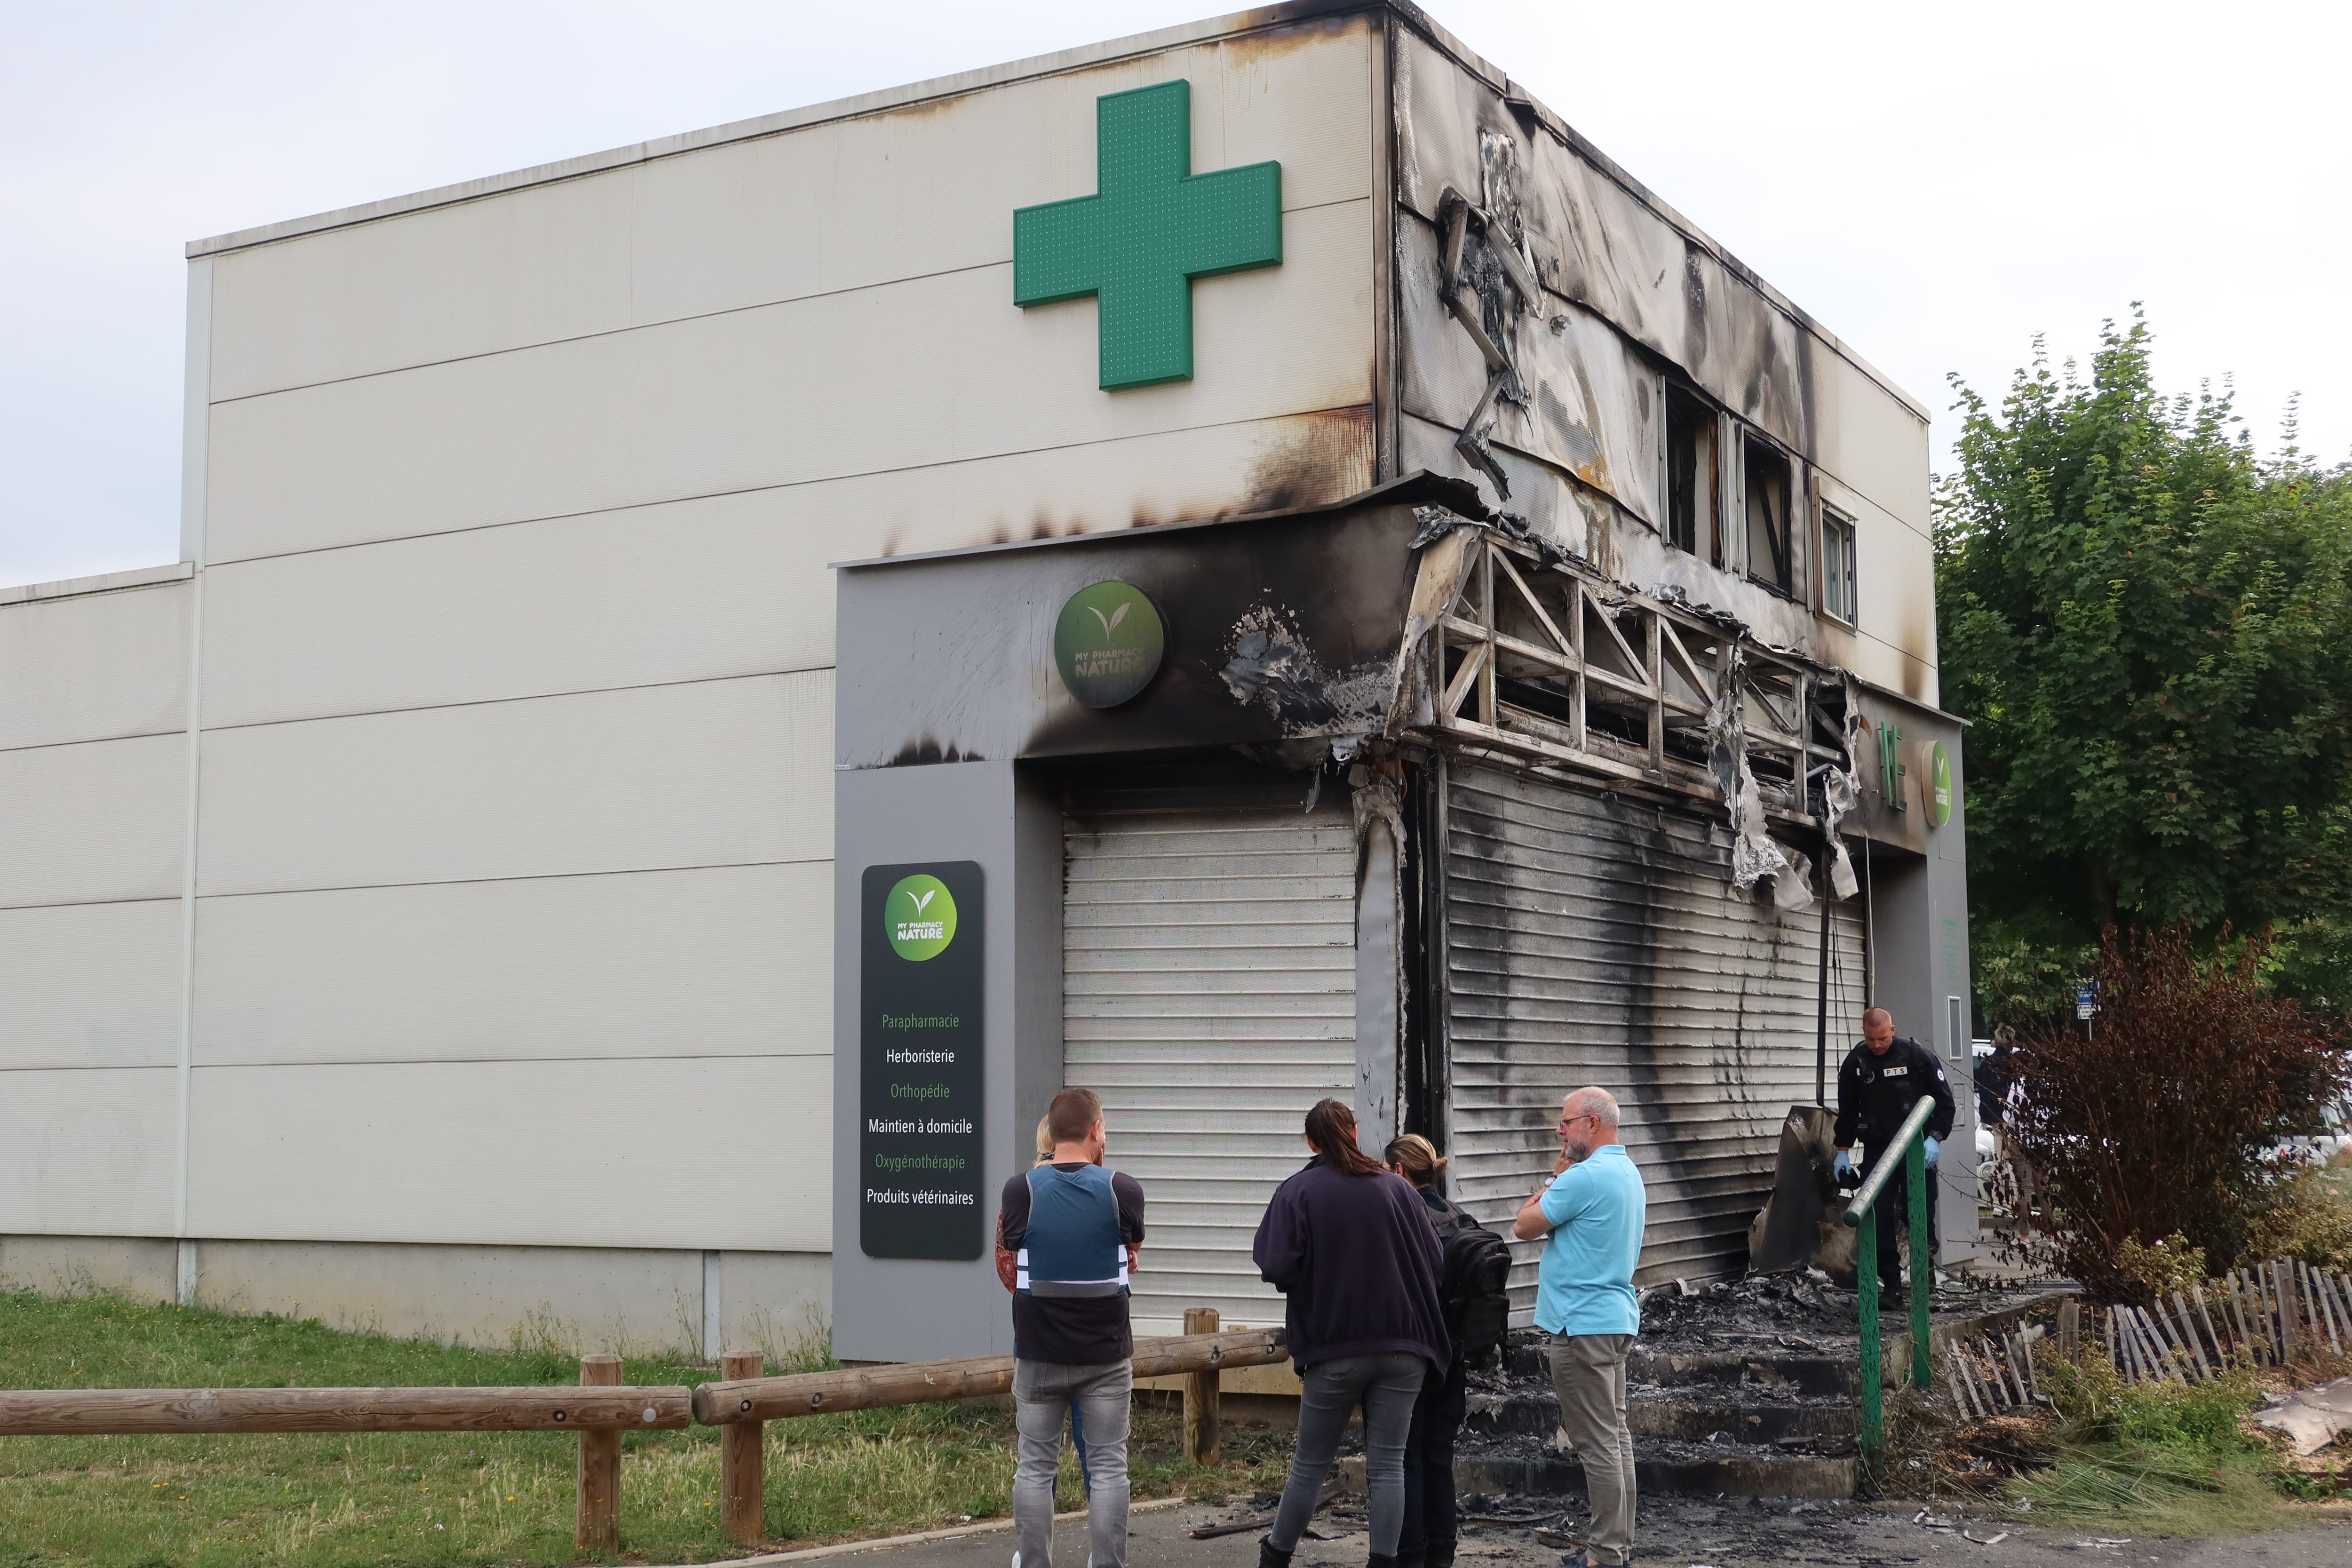 La suspension temporaire des pharmacies de garde concerne notamment la commune de Montataire où une officine a été saccagée et incendiée dans la nuit du 29 juin. LP/Clément Poulet